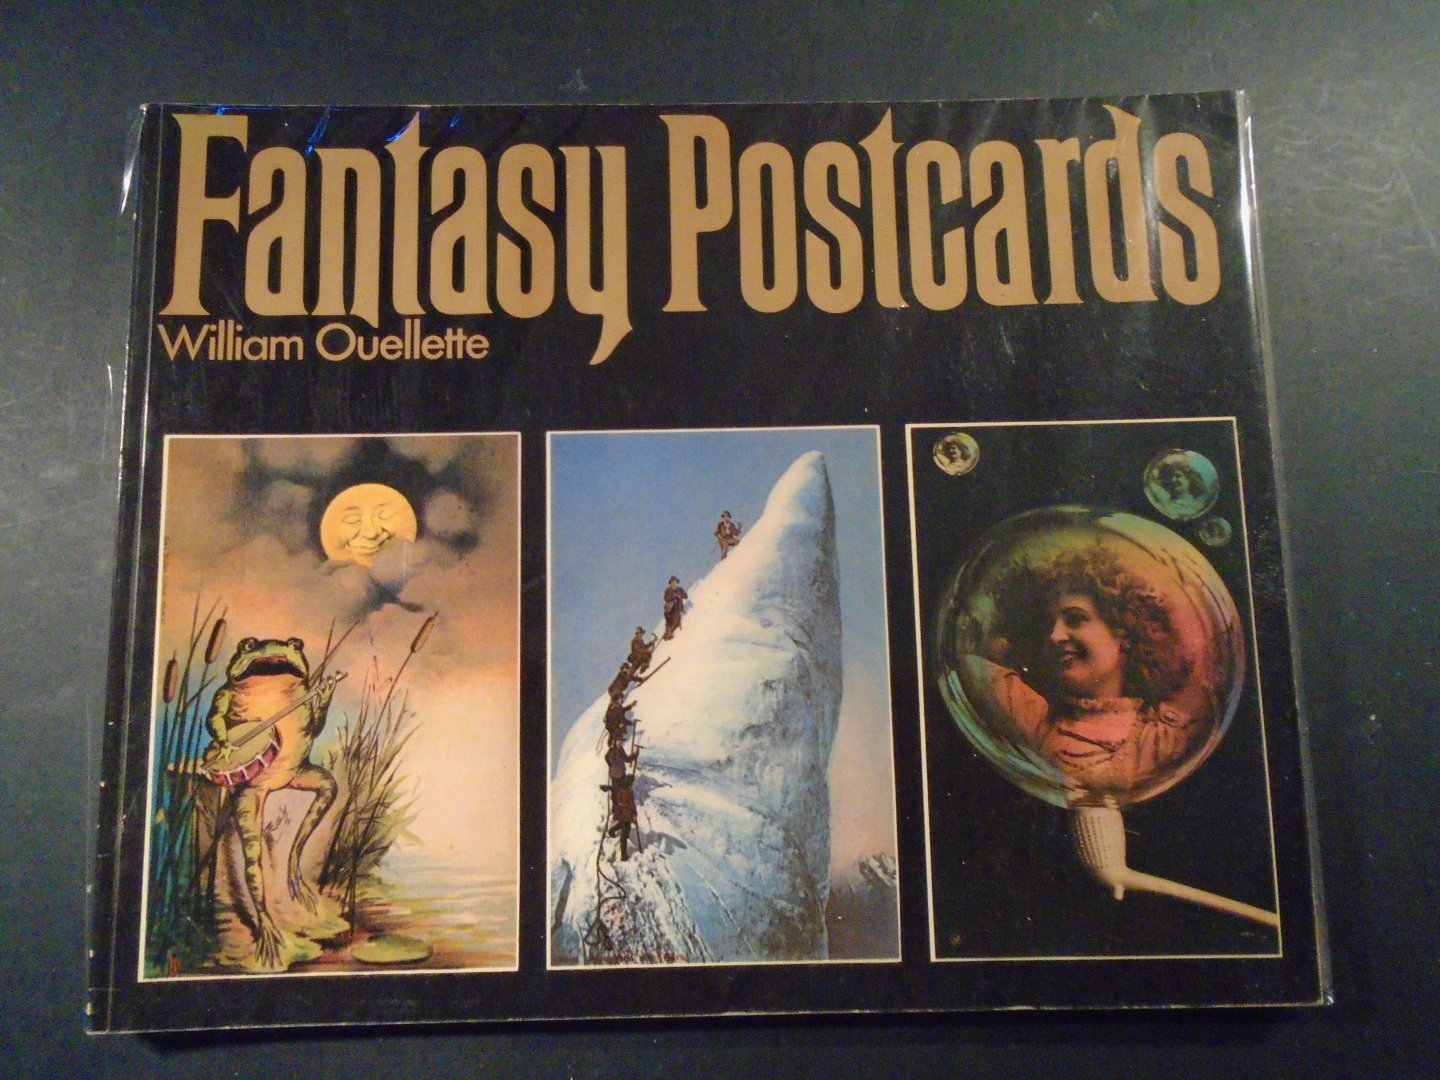 Quellette, William - Fantasy Postcards